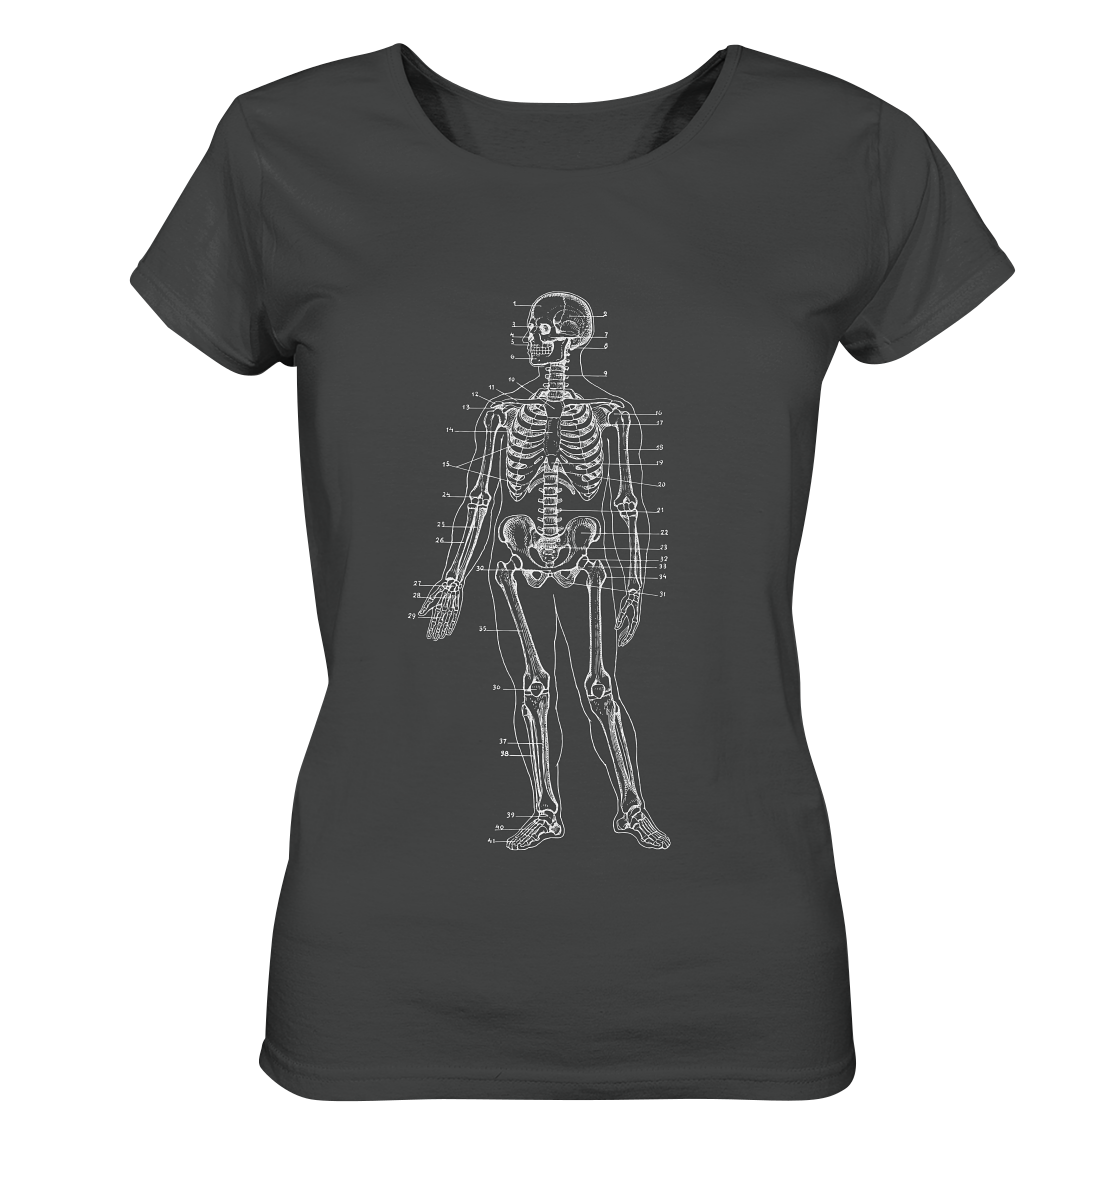 Skelett mit Zahlen - Ladies Organic Shirt